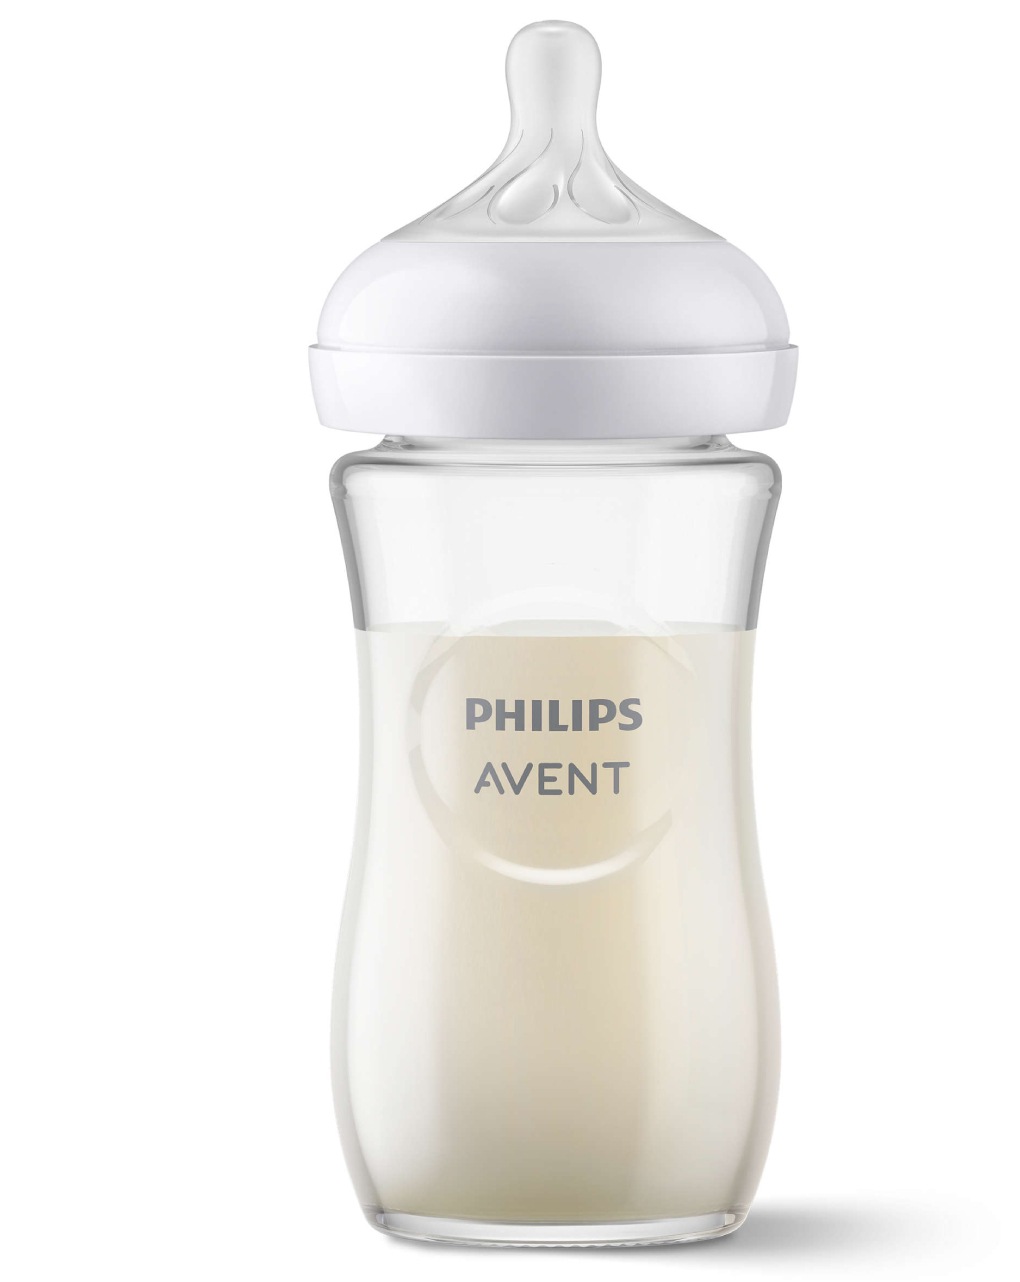 Biberão de vidro natural com tetina de resposta natural 240 ml 1m+ | sem bpa - philips avent - Philips Avent